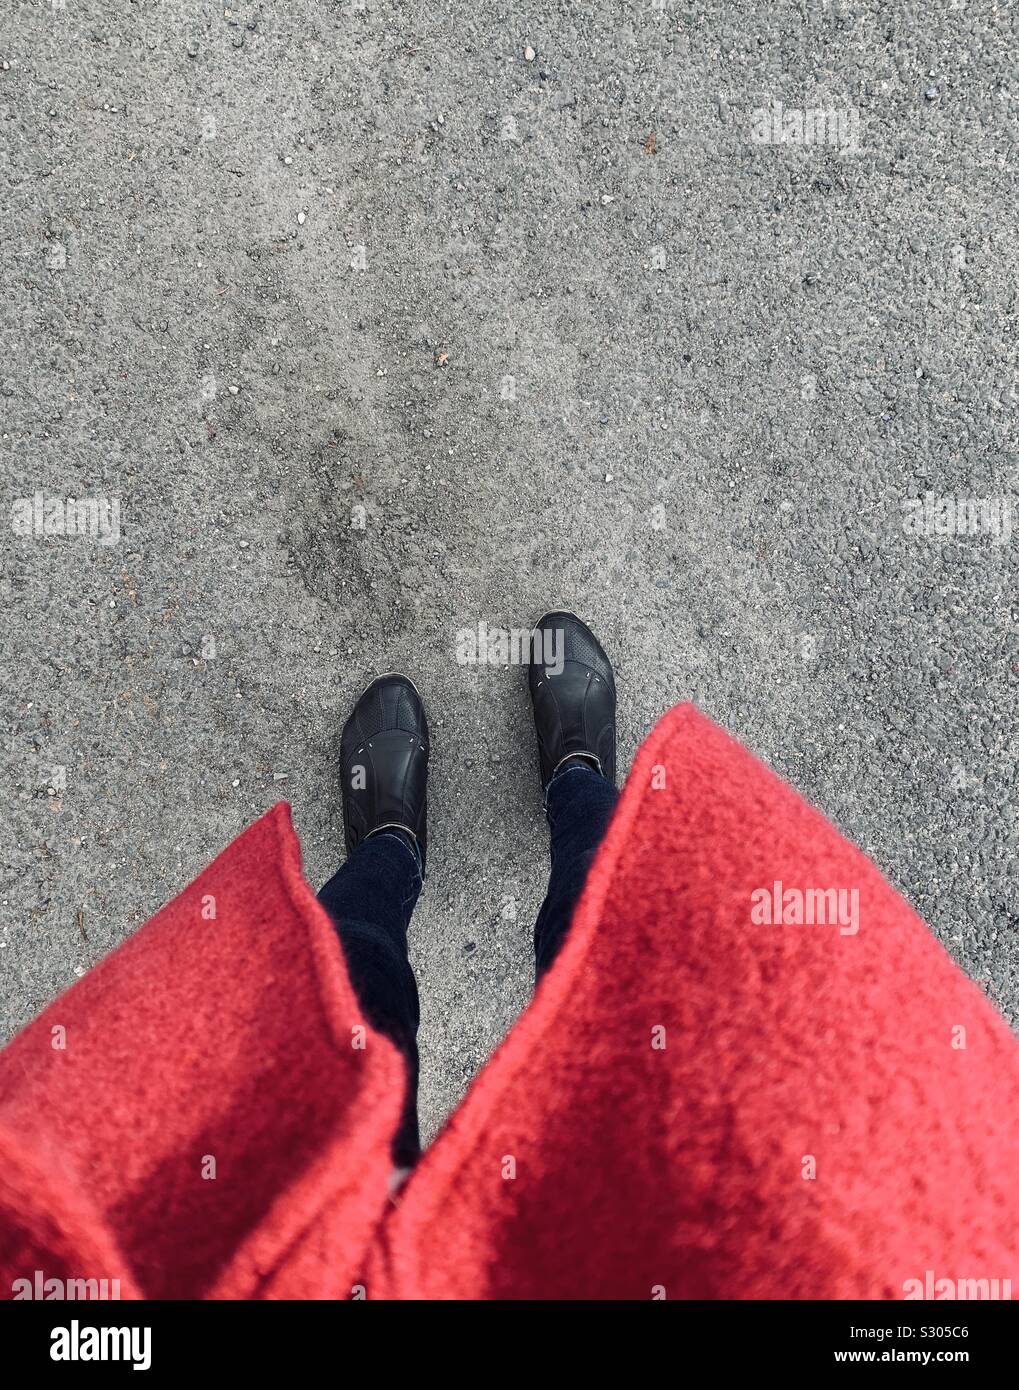 Dreckige Asphalt im Gegensatz zu schwarzen Schuhen und roten Mantel Stockfoto